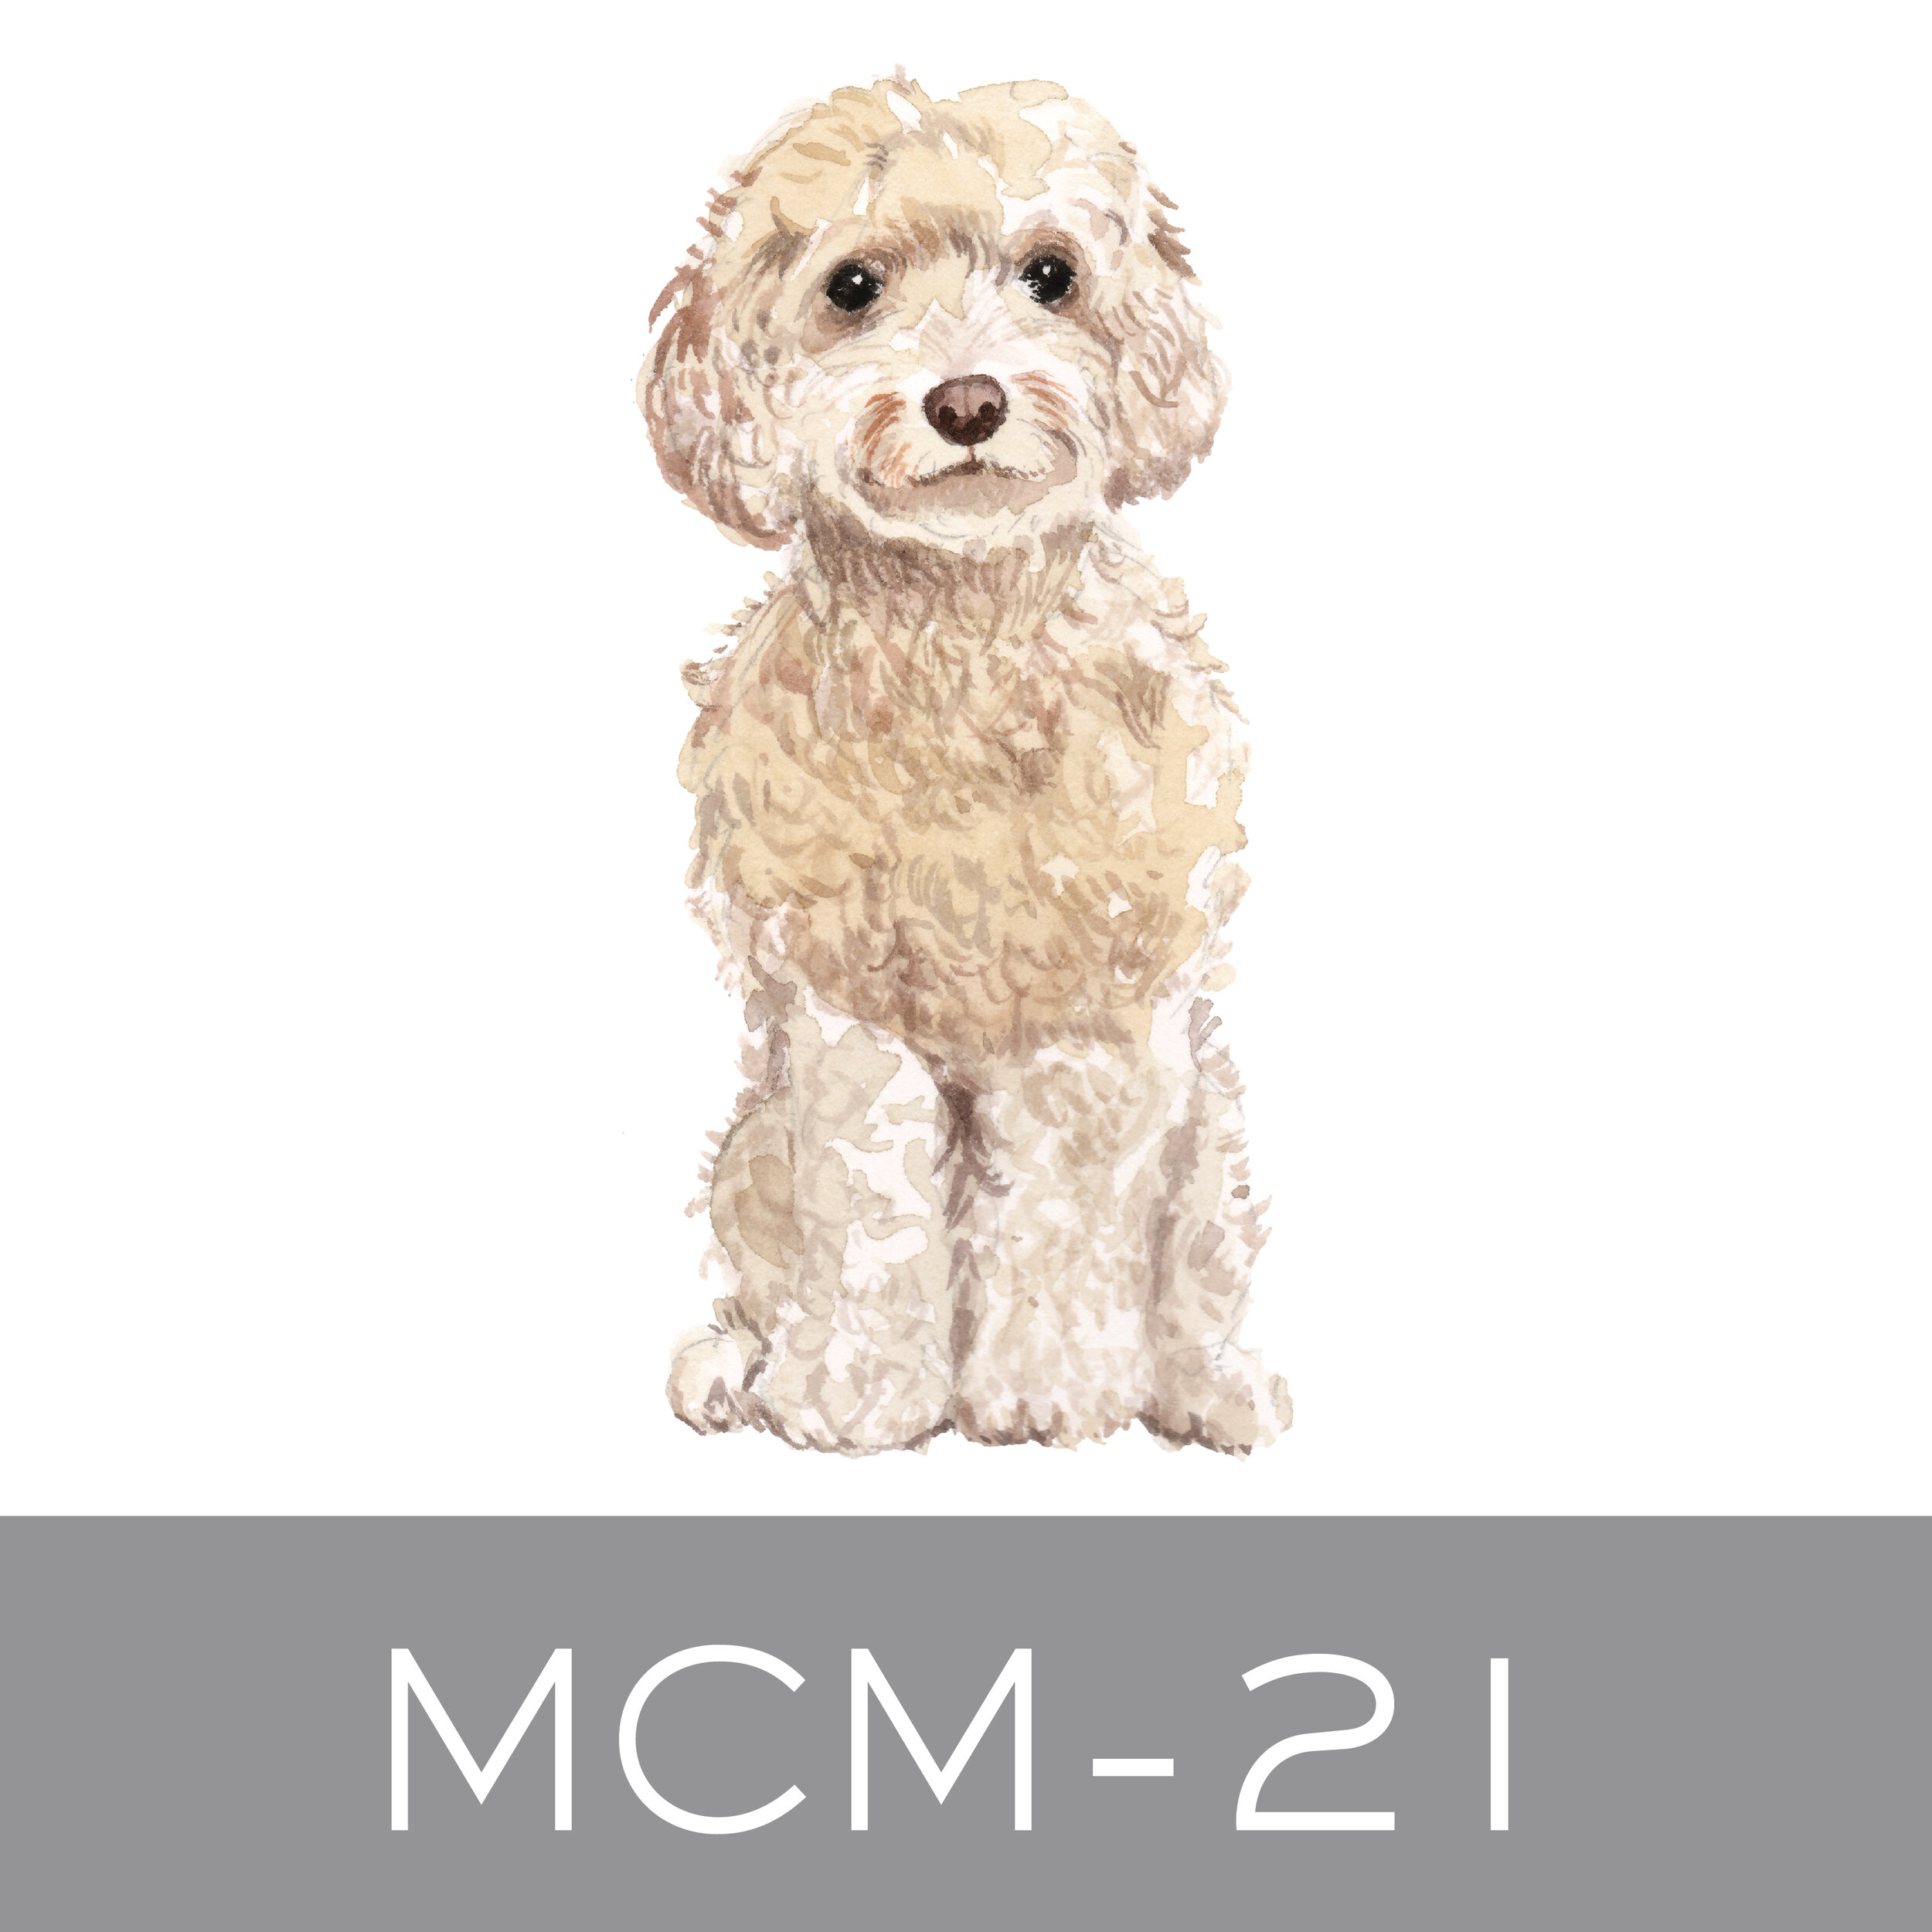 MCM-21.jpg